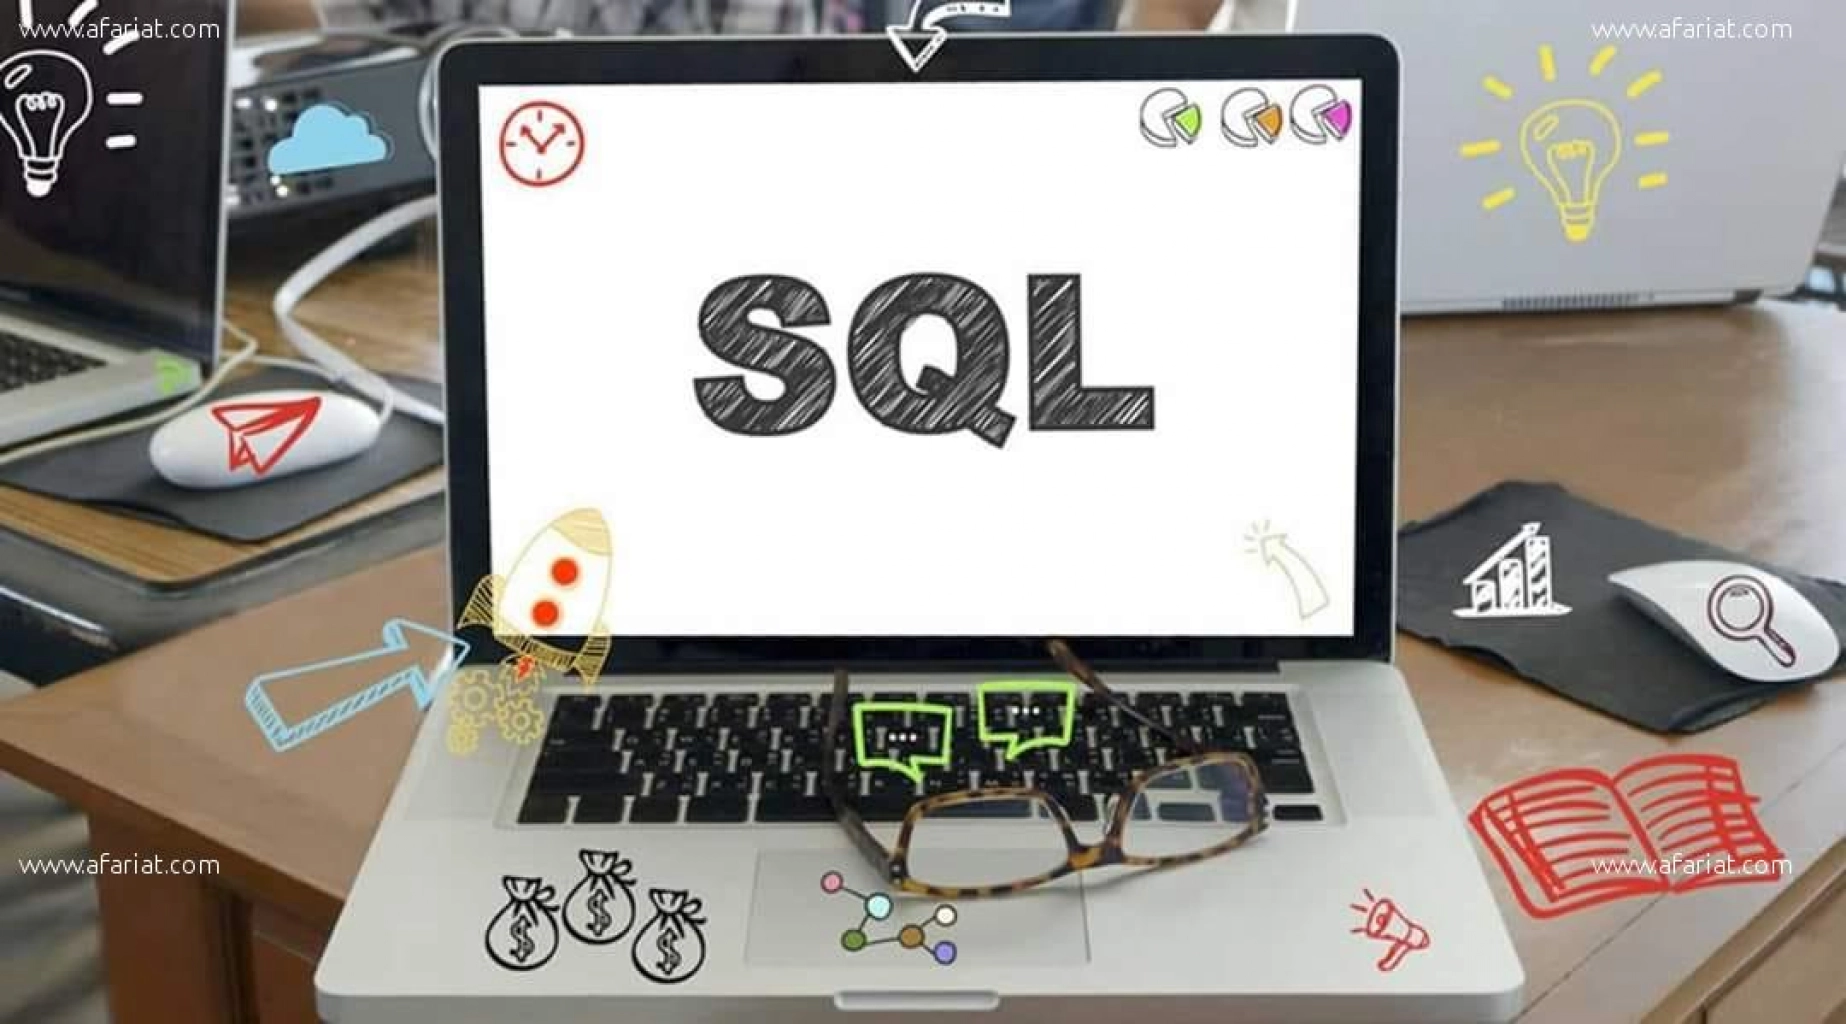 Promo: Formation pratique SQL